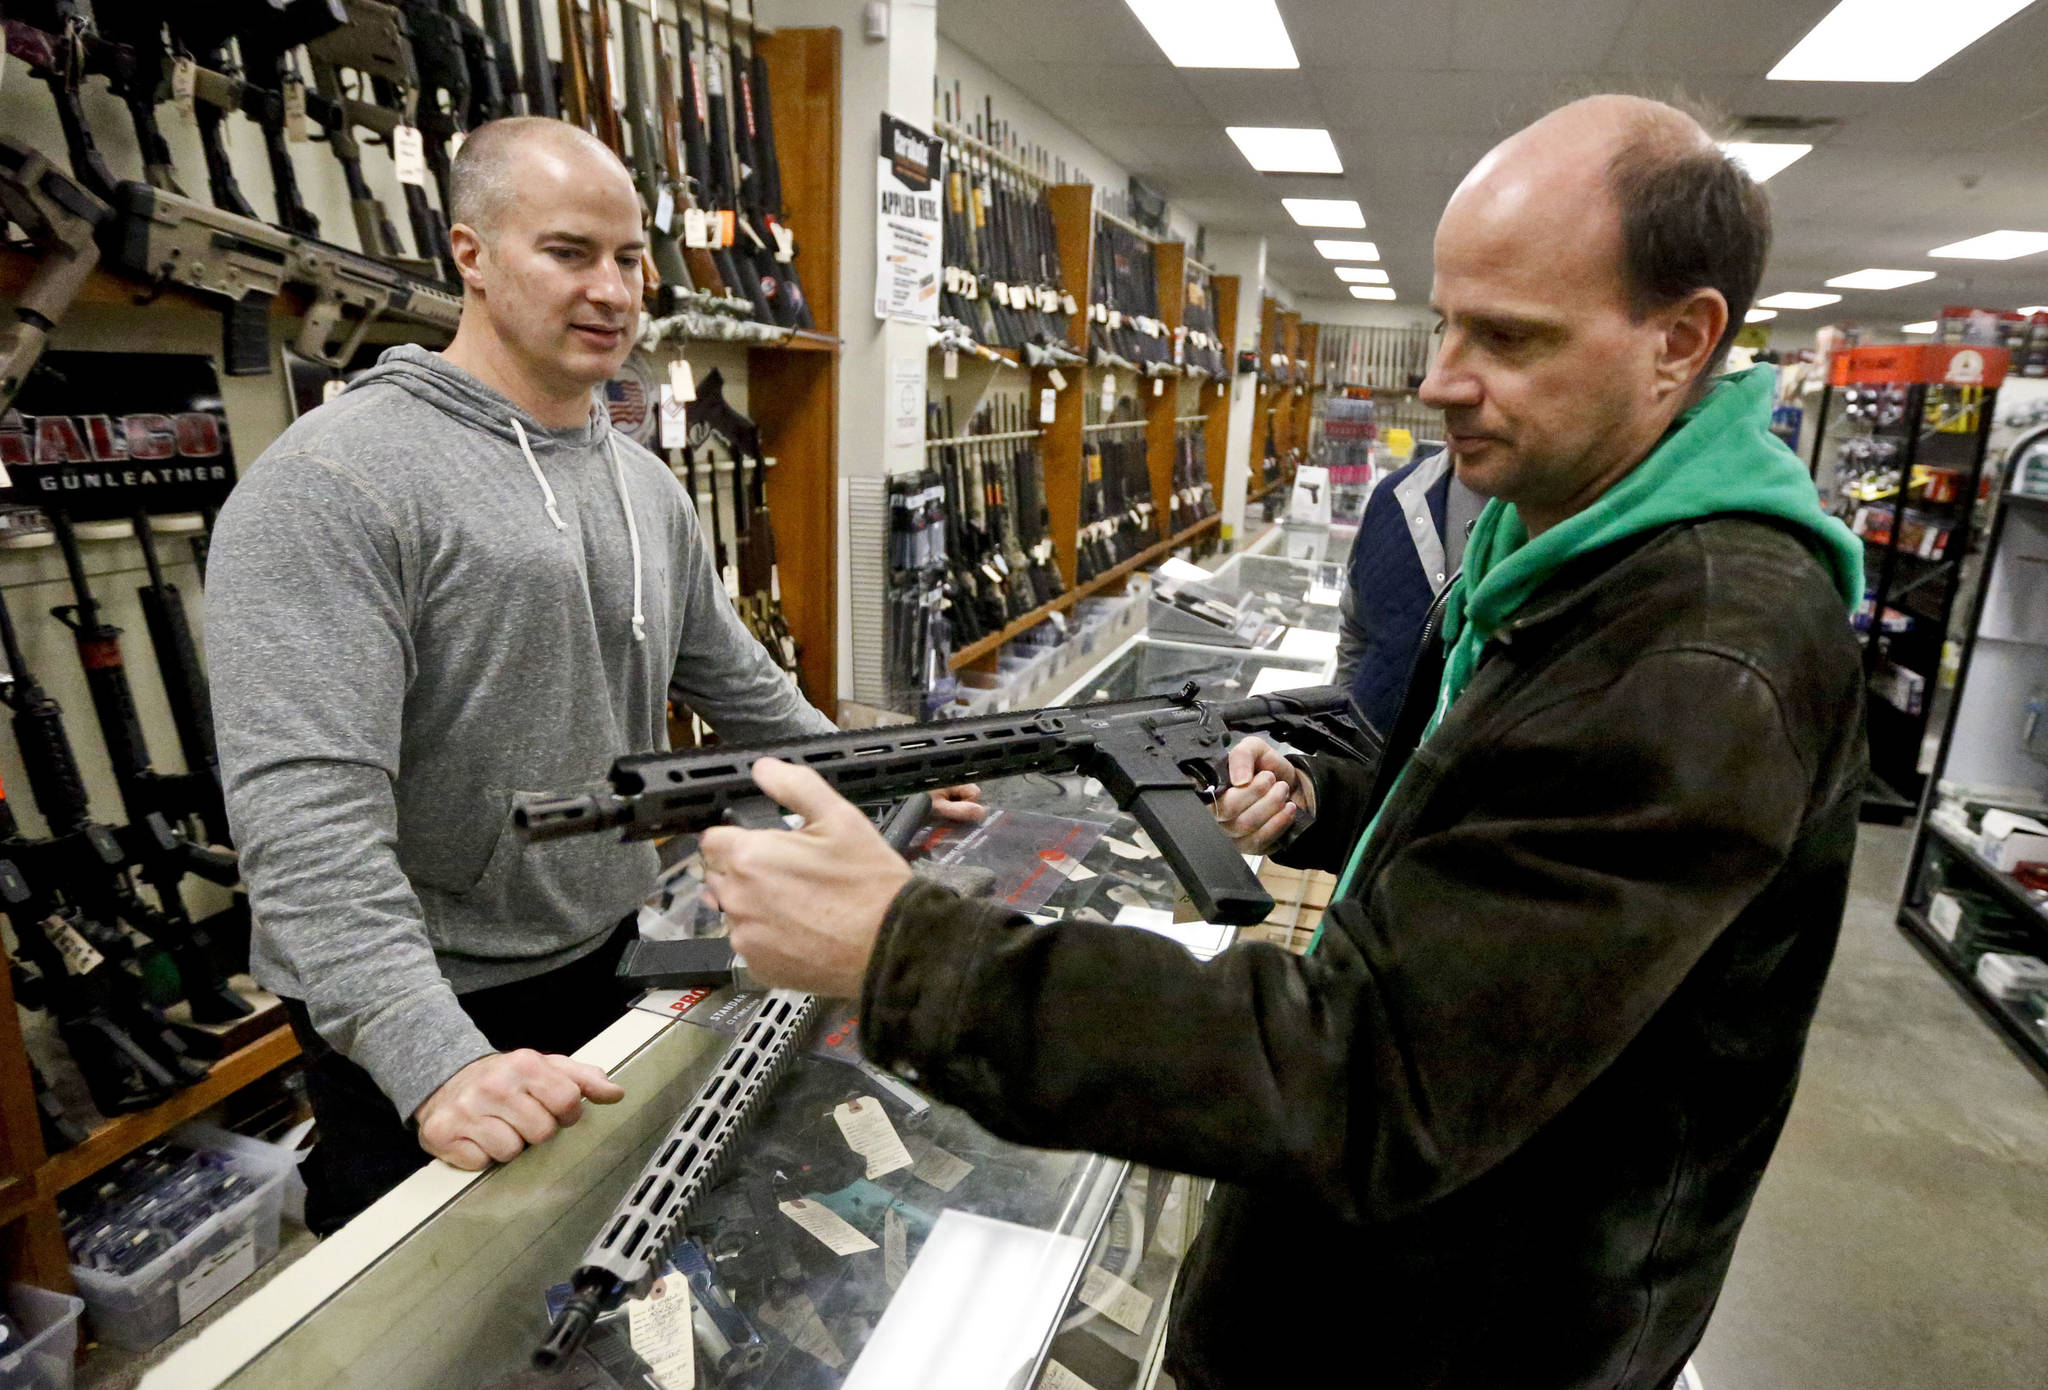 ‘Trump slump’ in gun sales continues despite control debate